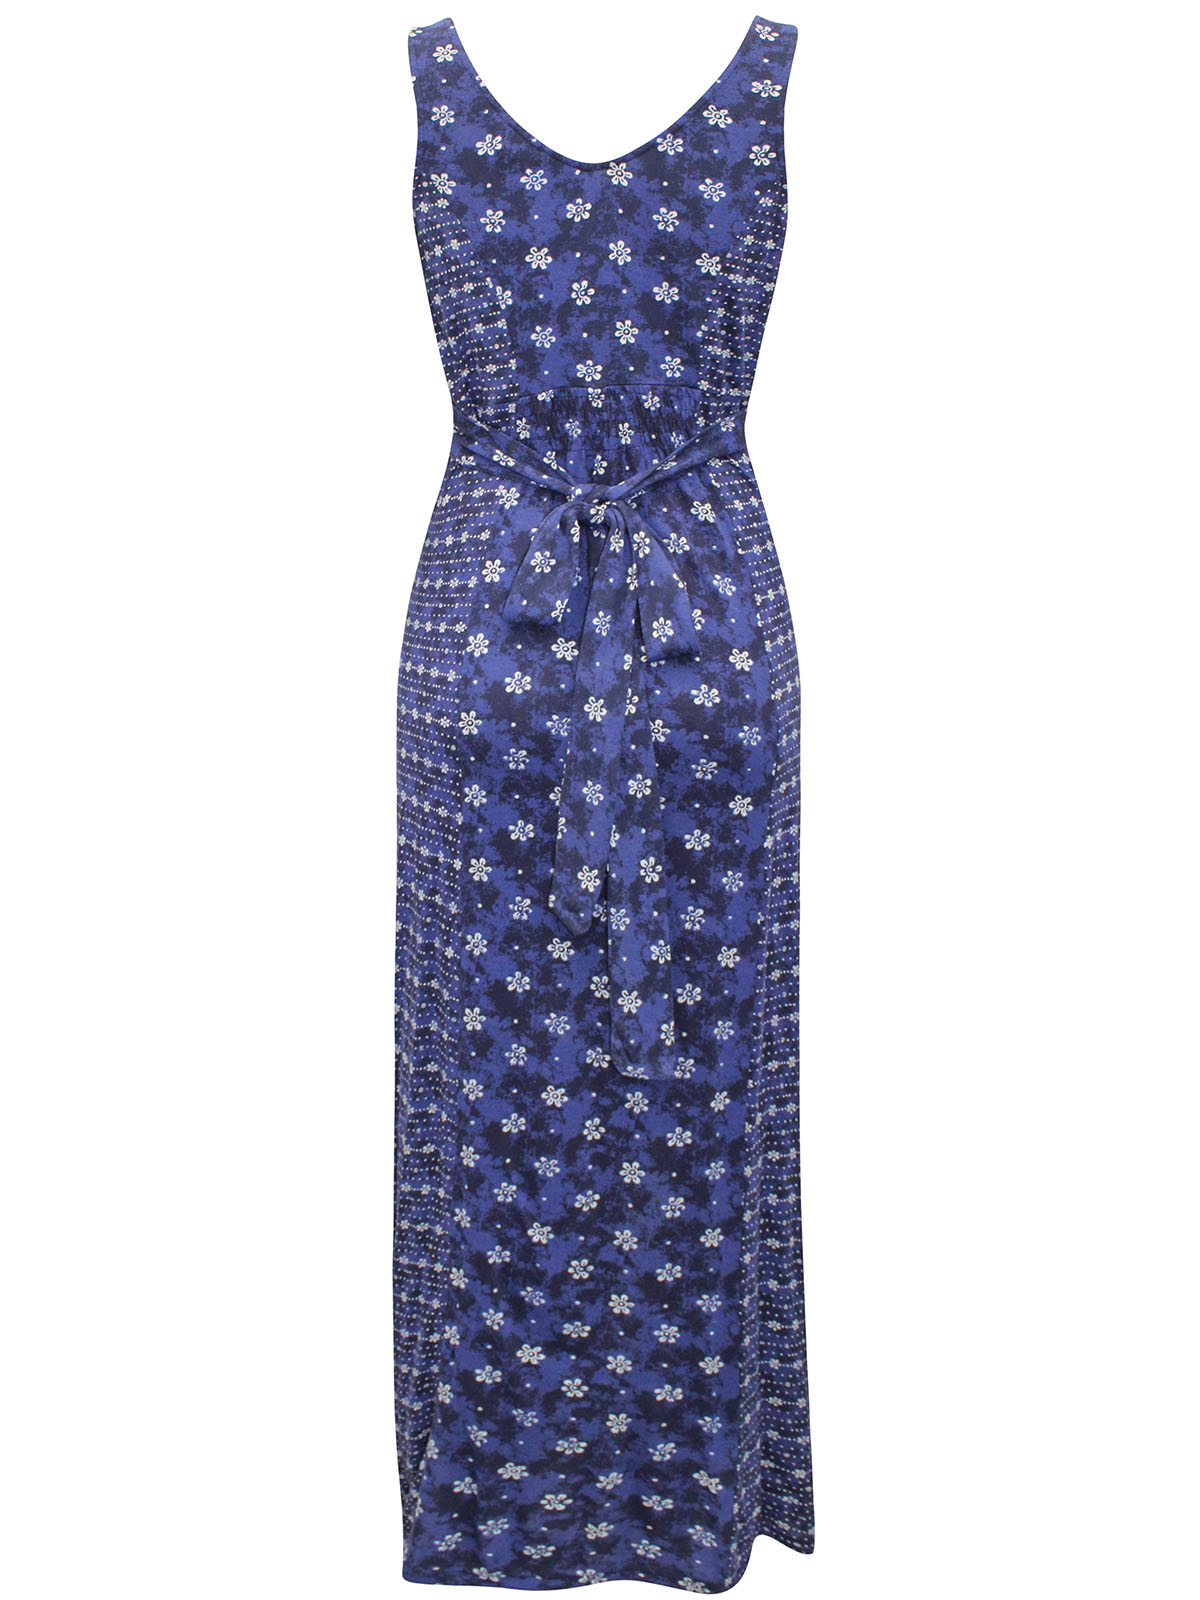 FAT FACE - - Fat Face BLUE Sleeveless Printed Tie Waist Maxi Dress ...